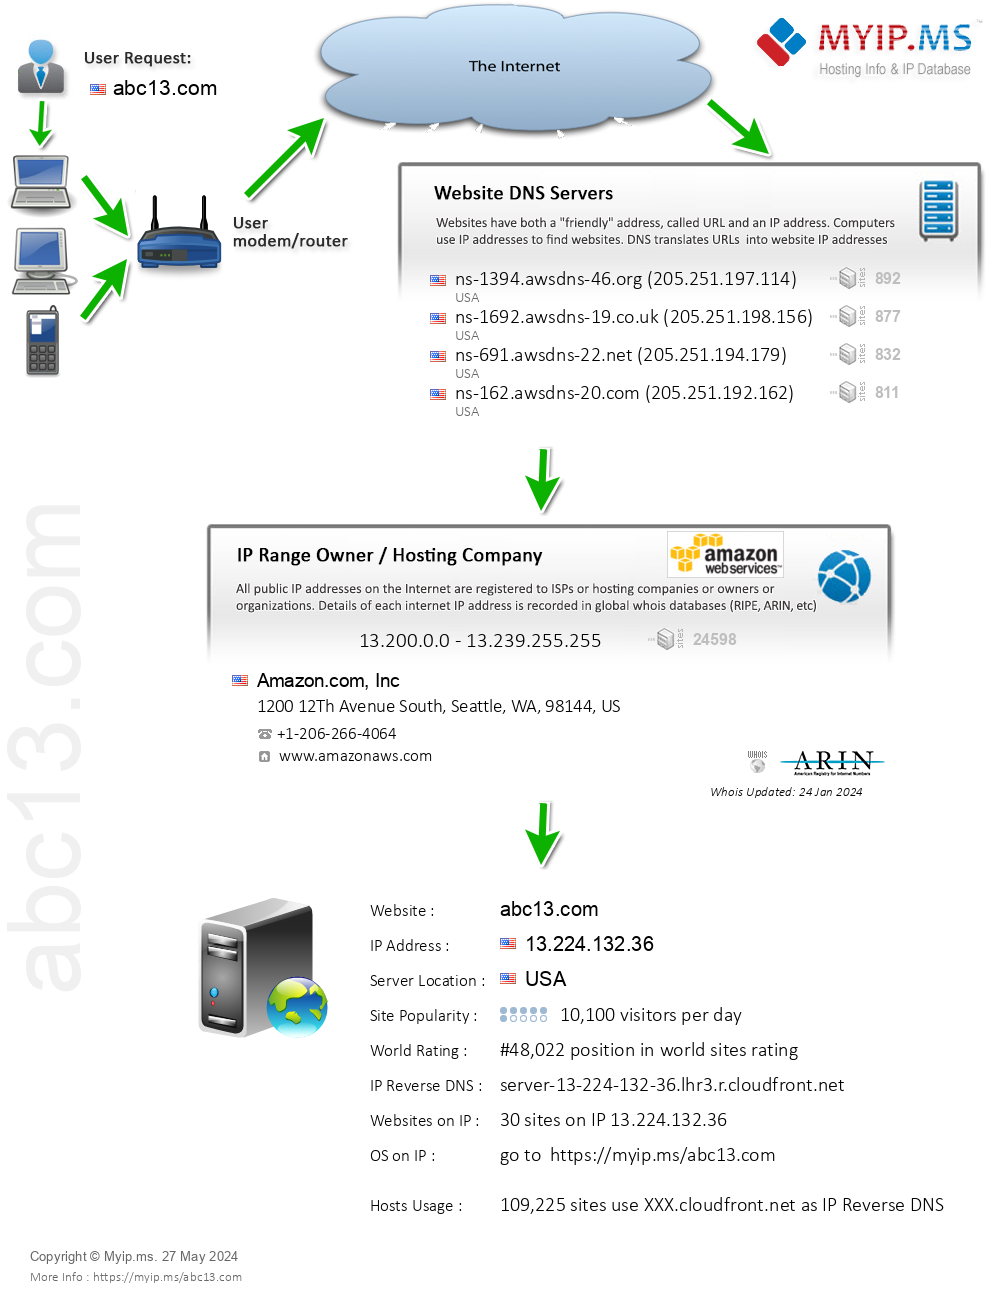 Abc13.com - Website Hosting Visual IP Diagram